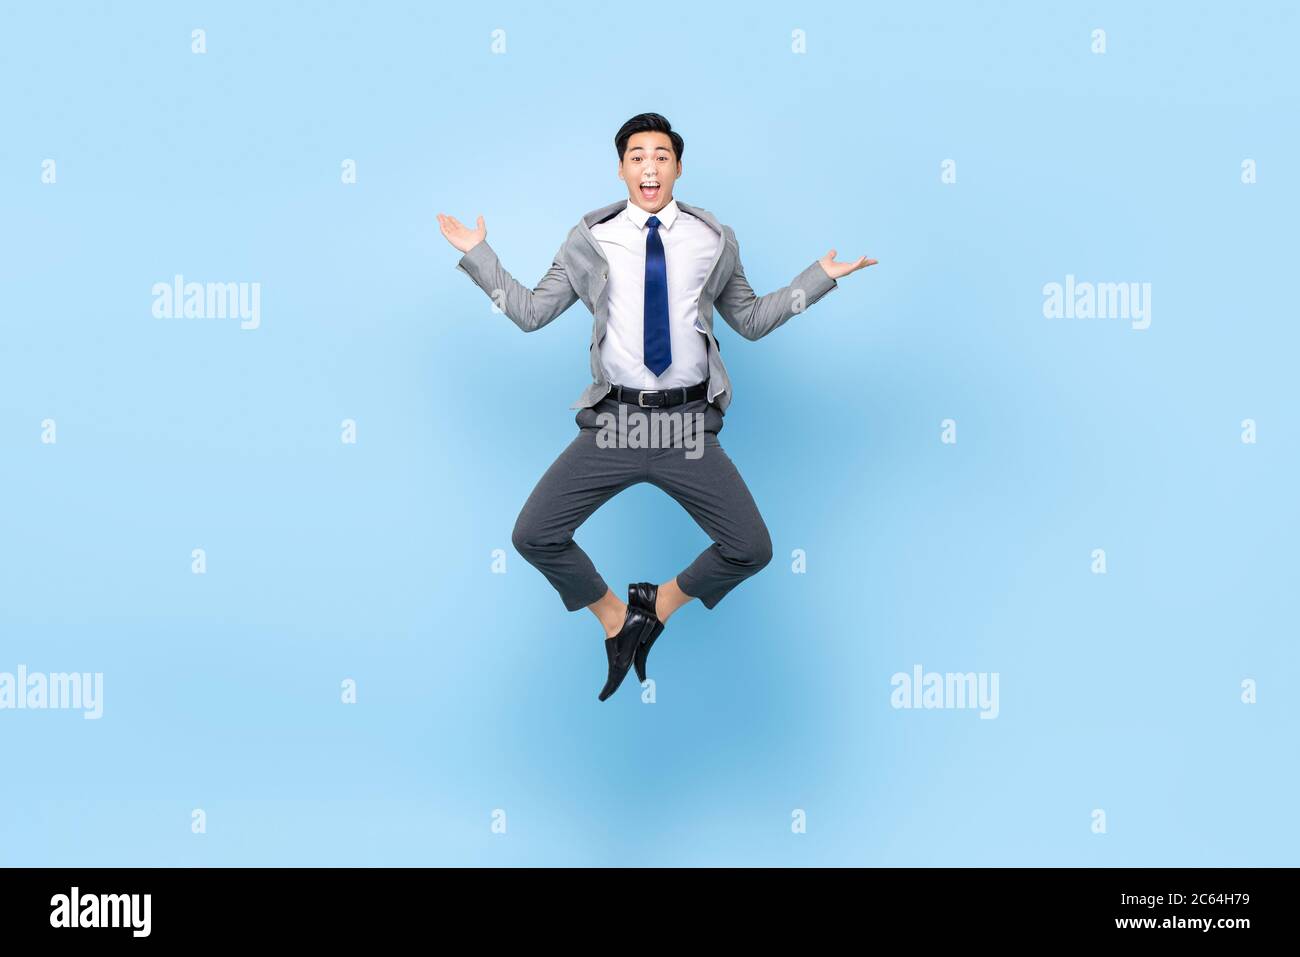 Portrait plein de jeu de jeunes hommes d'affaires asiatiques heureux et édécloisonnés sautant en plein air en faisant un geste amusant et amusant dans un arrière-plan isolé de studio bleu Banque D'Images